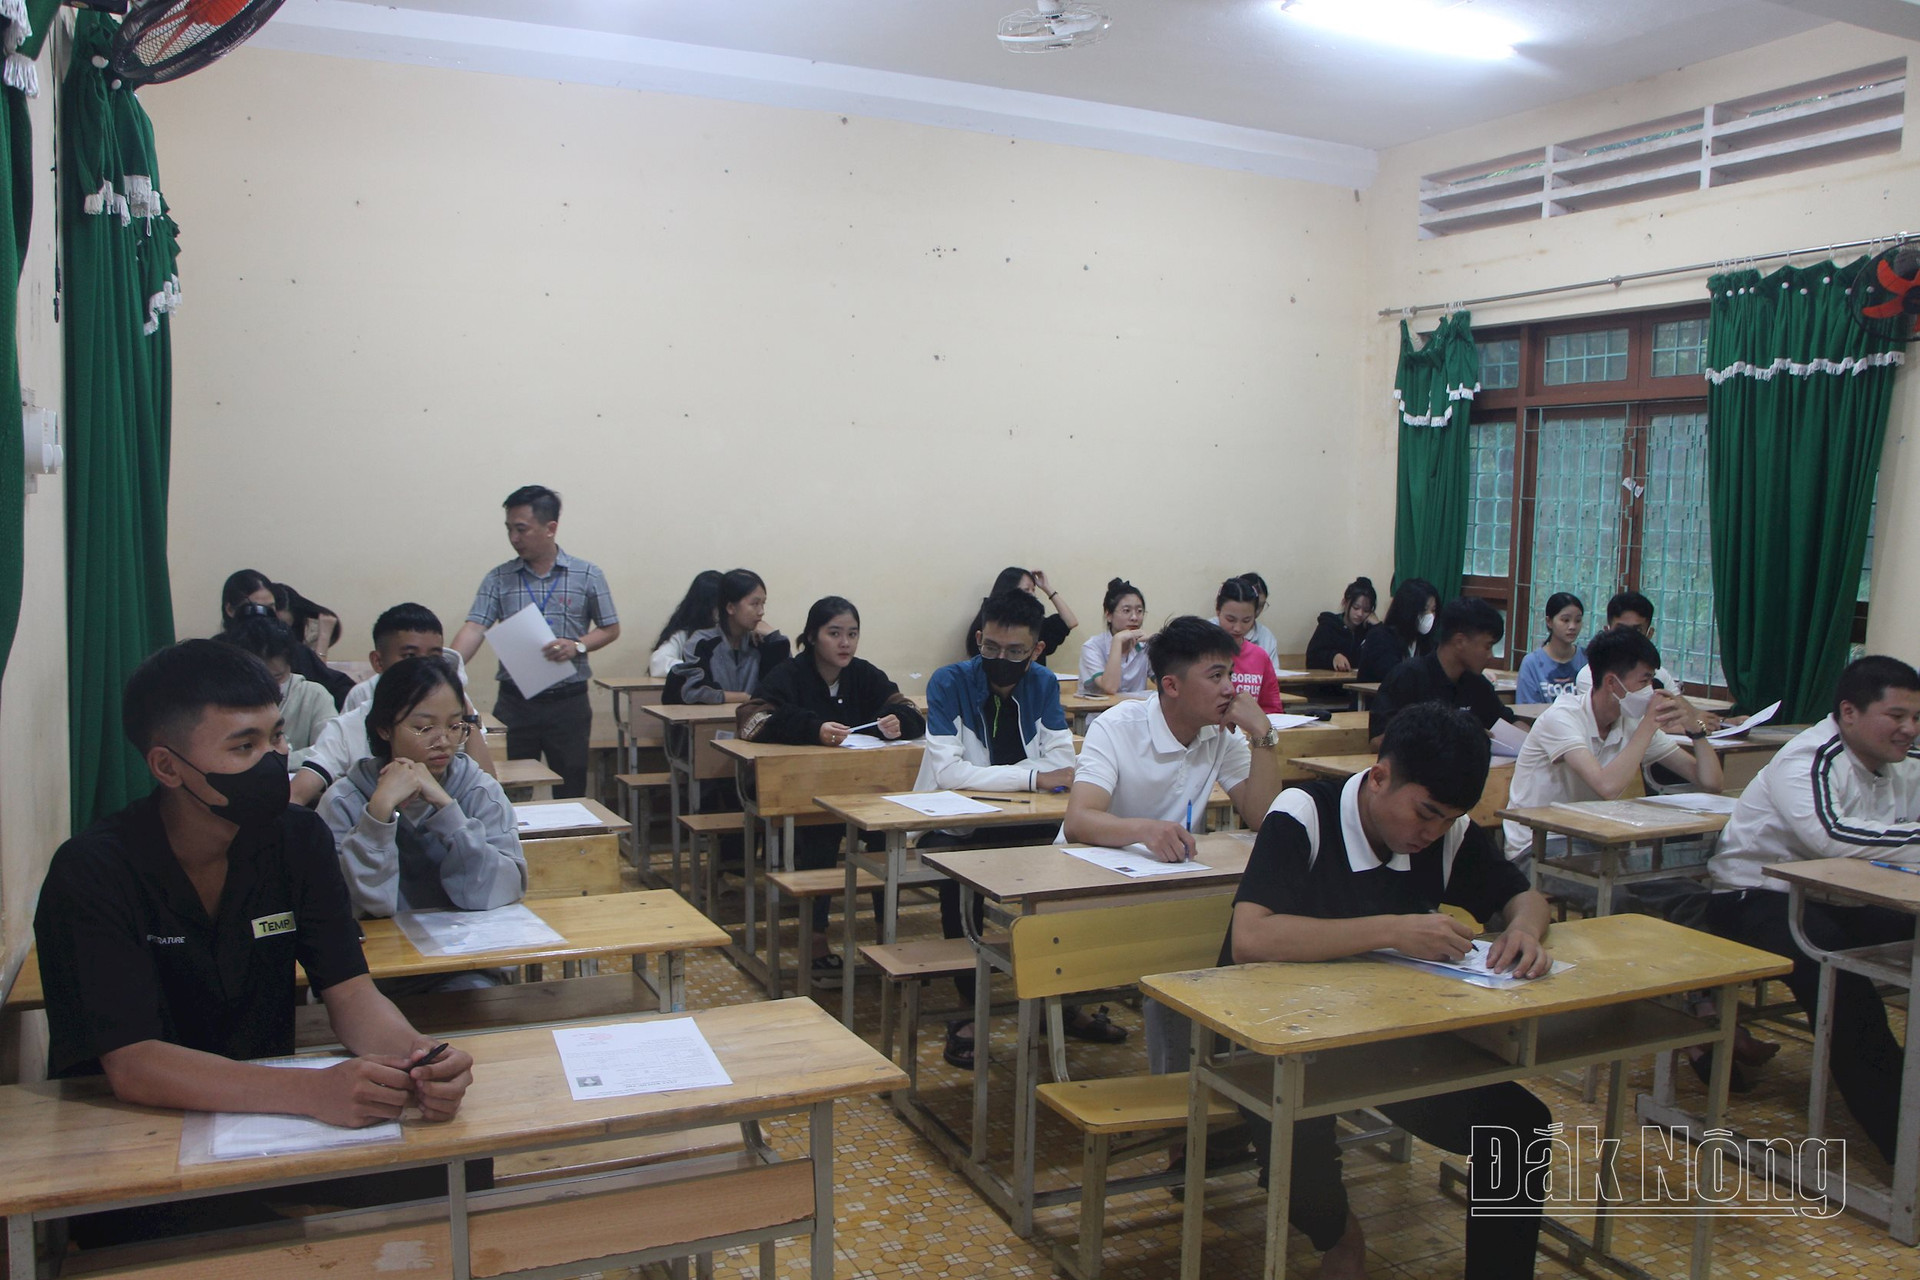 Cán bộ coi thi phát phiếu thẻ dự thi cho thí sinh tại điểm thi Trường THPT Chu Văn An ở TP. Gia Nghĩa kiểm tra thông tin